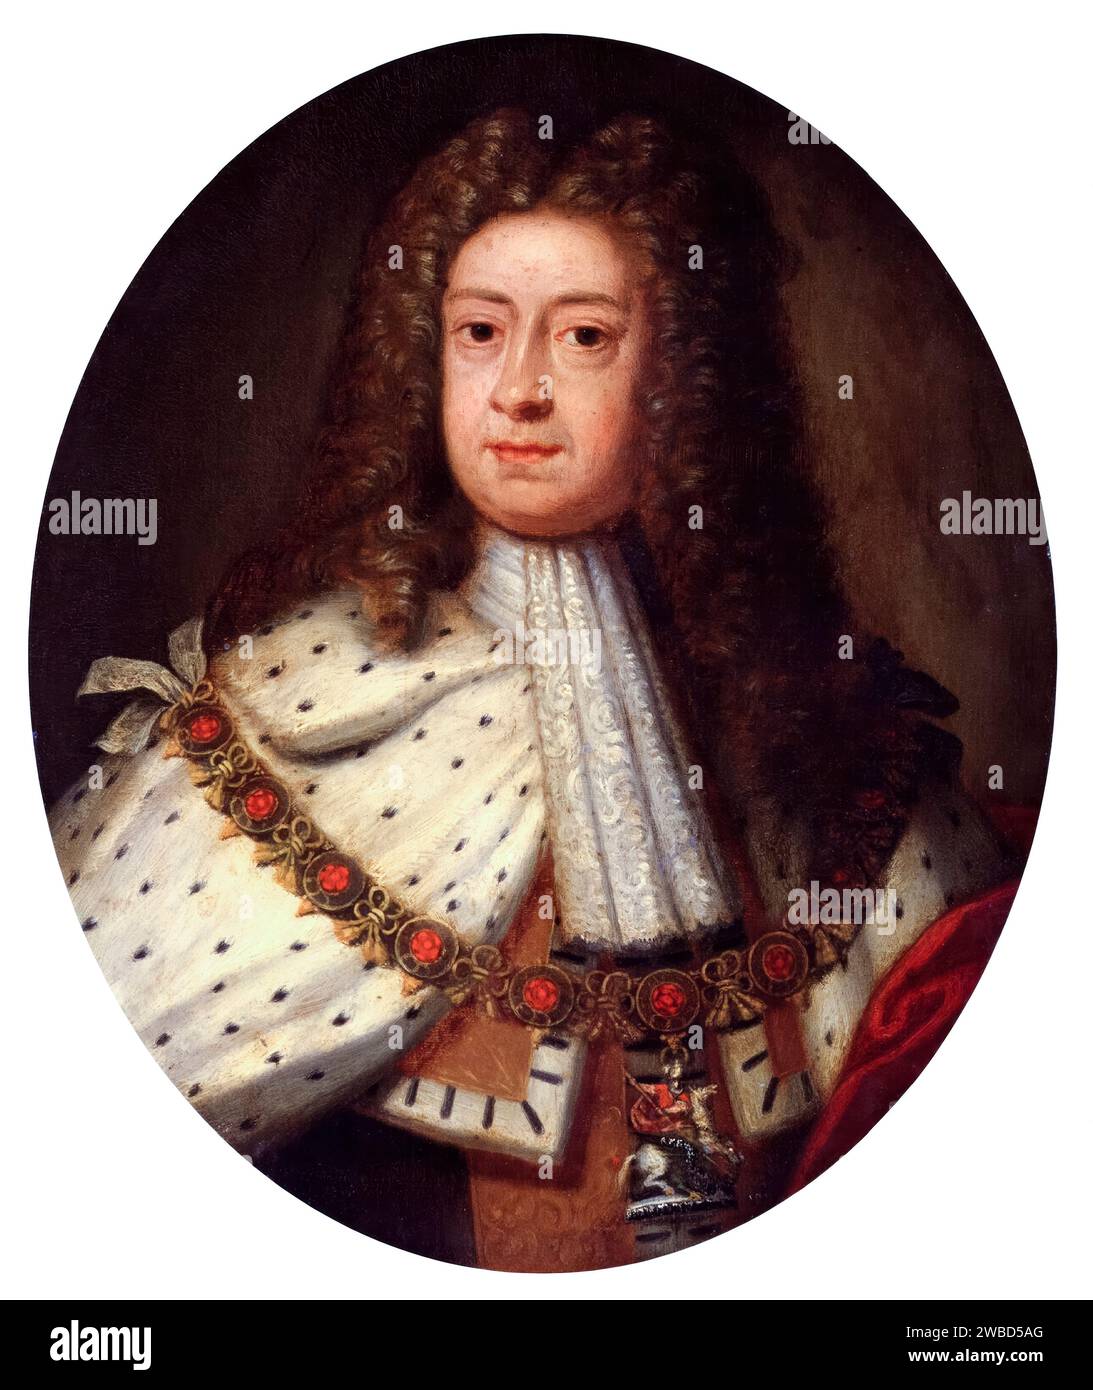 Giorgio i di Gran Bretagna e Irlanda (1660-1727), regnò (1714-1727), ritratto dipinto ad olio su rame in onore di Sir Godfrey Kneller, circa 1714 Foto Stock